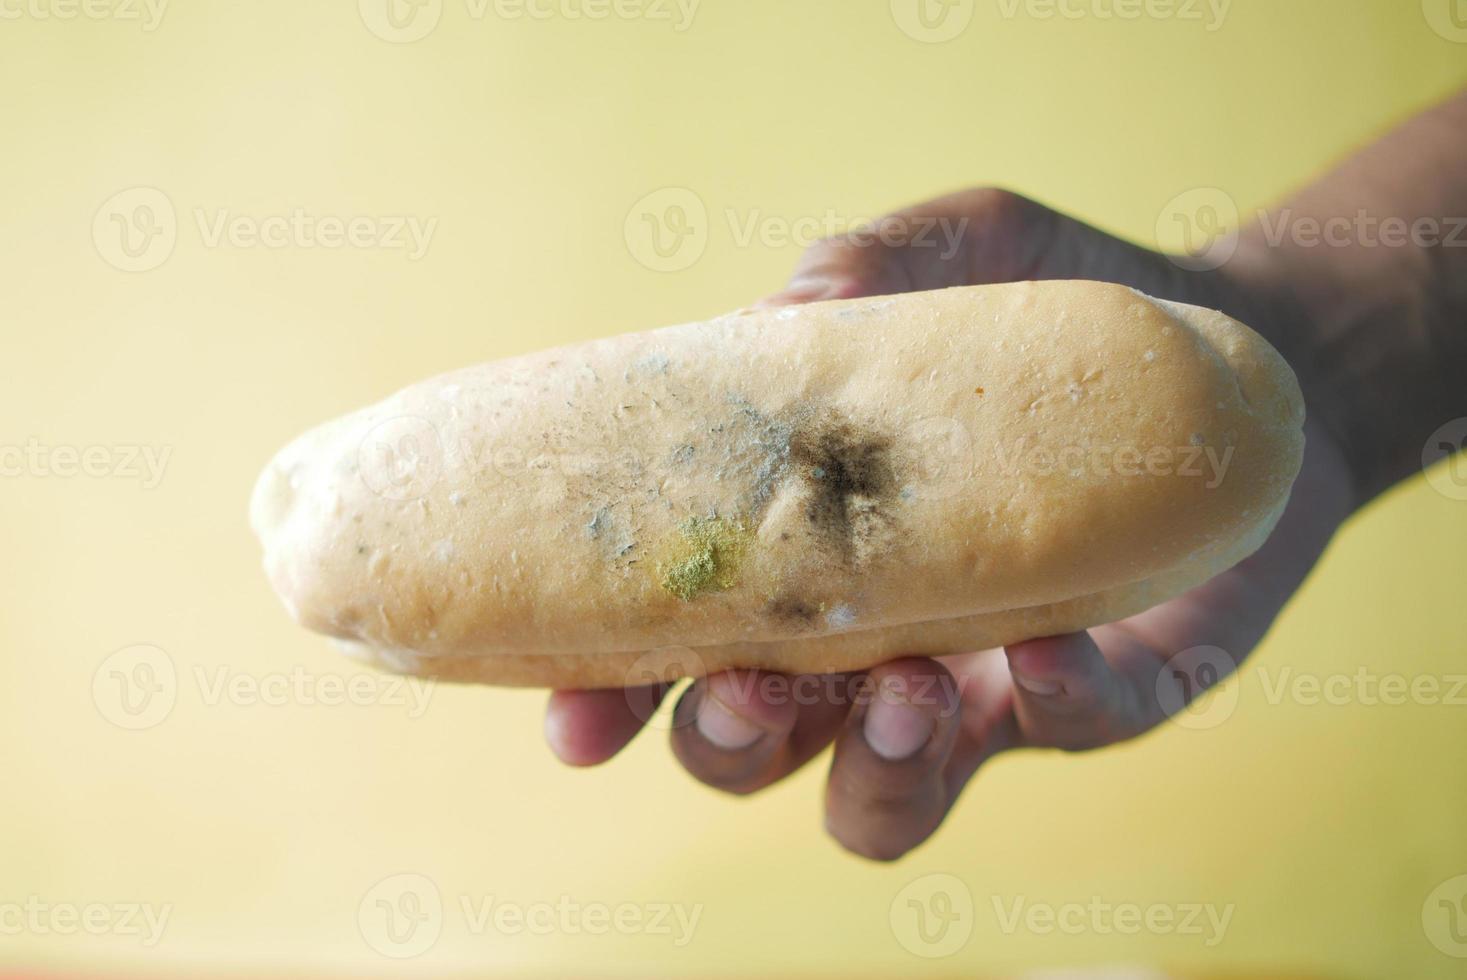 tenant du pain brun avec de la moisissure. photo